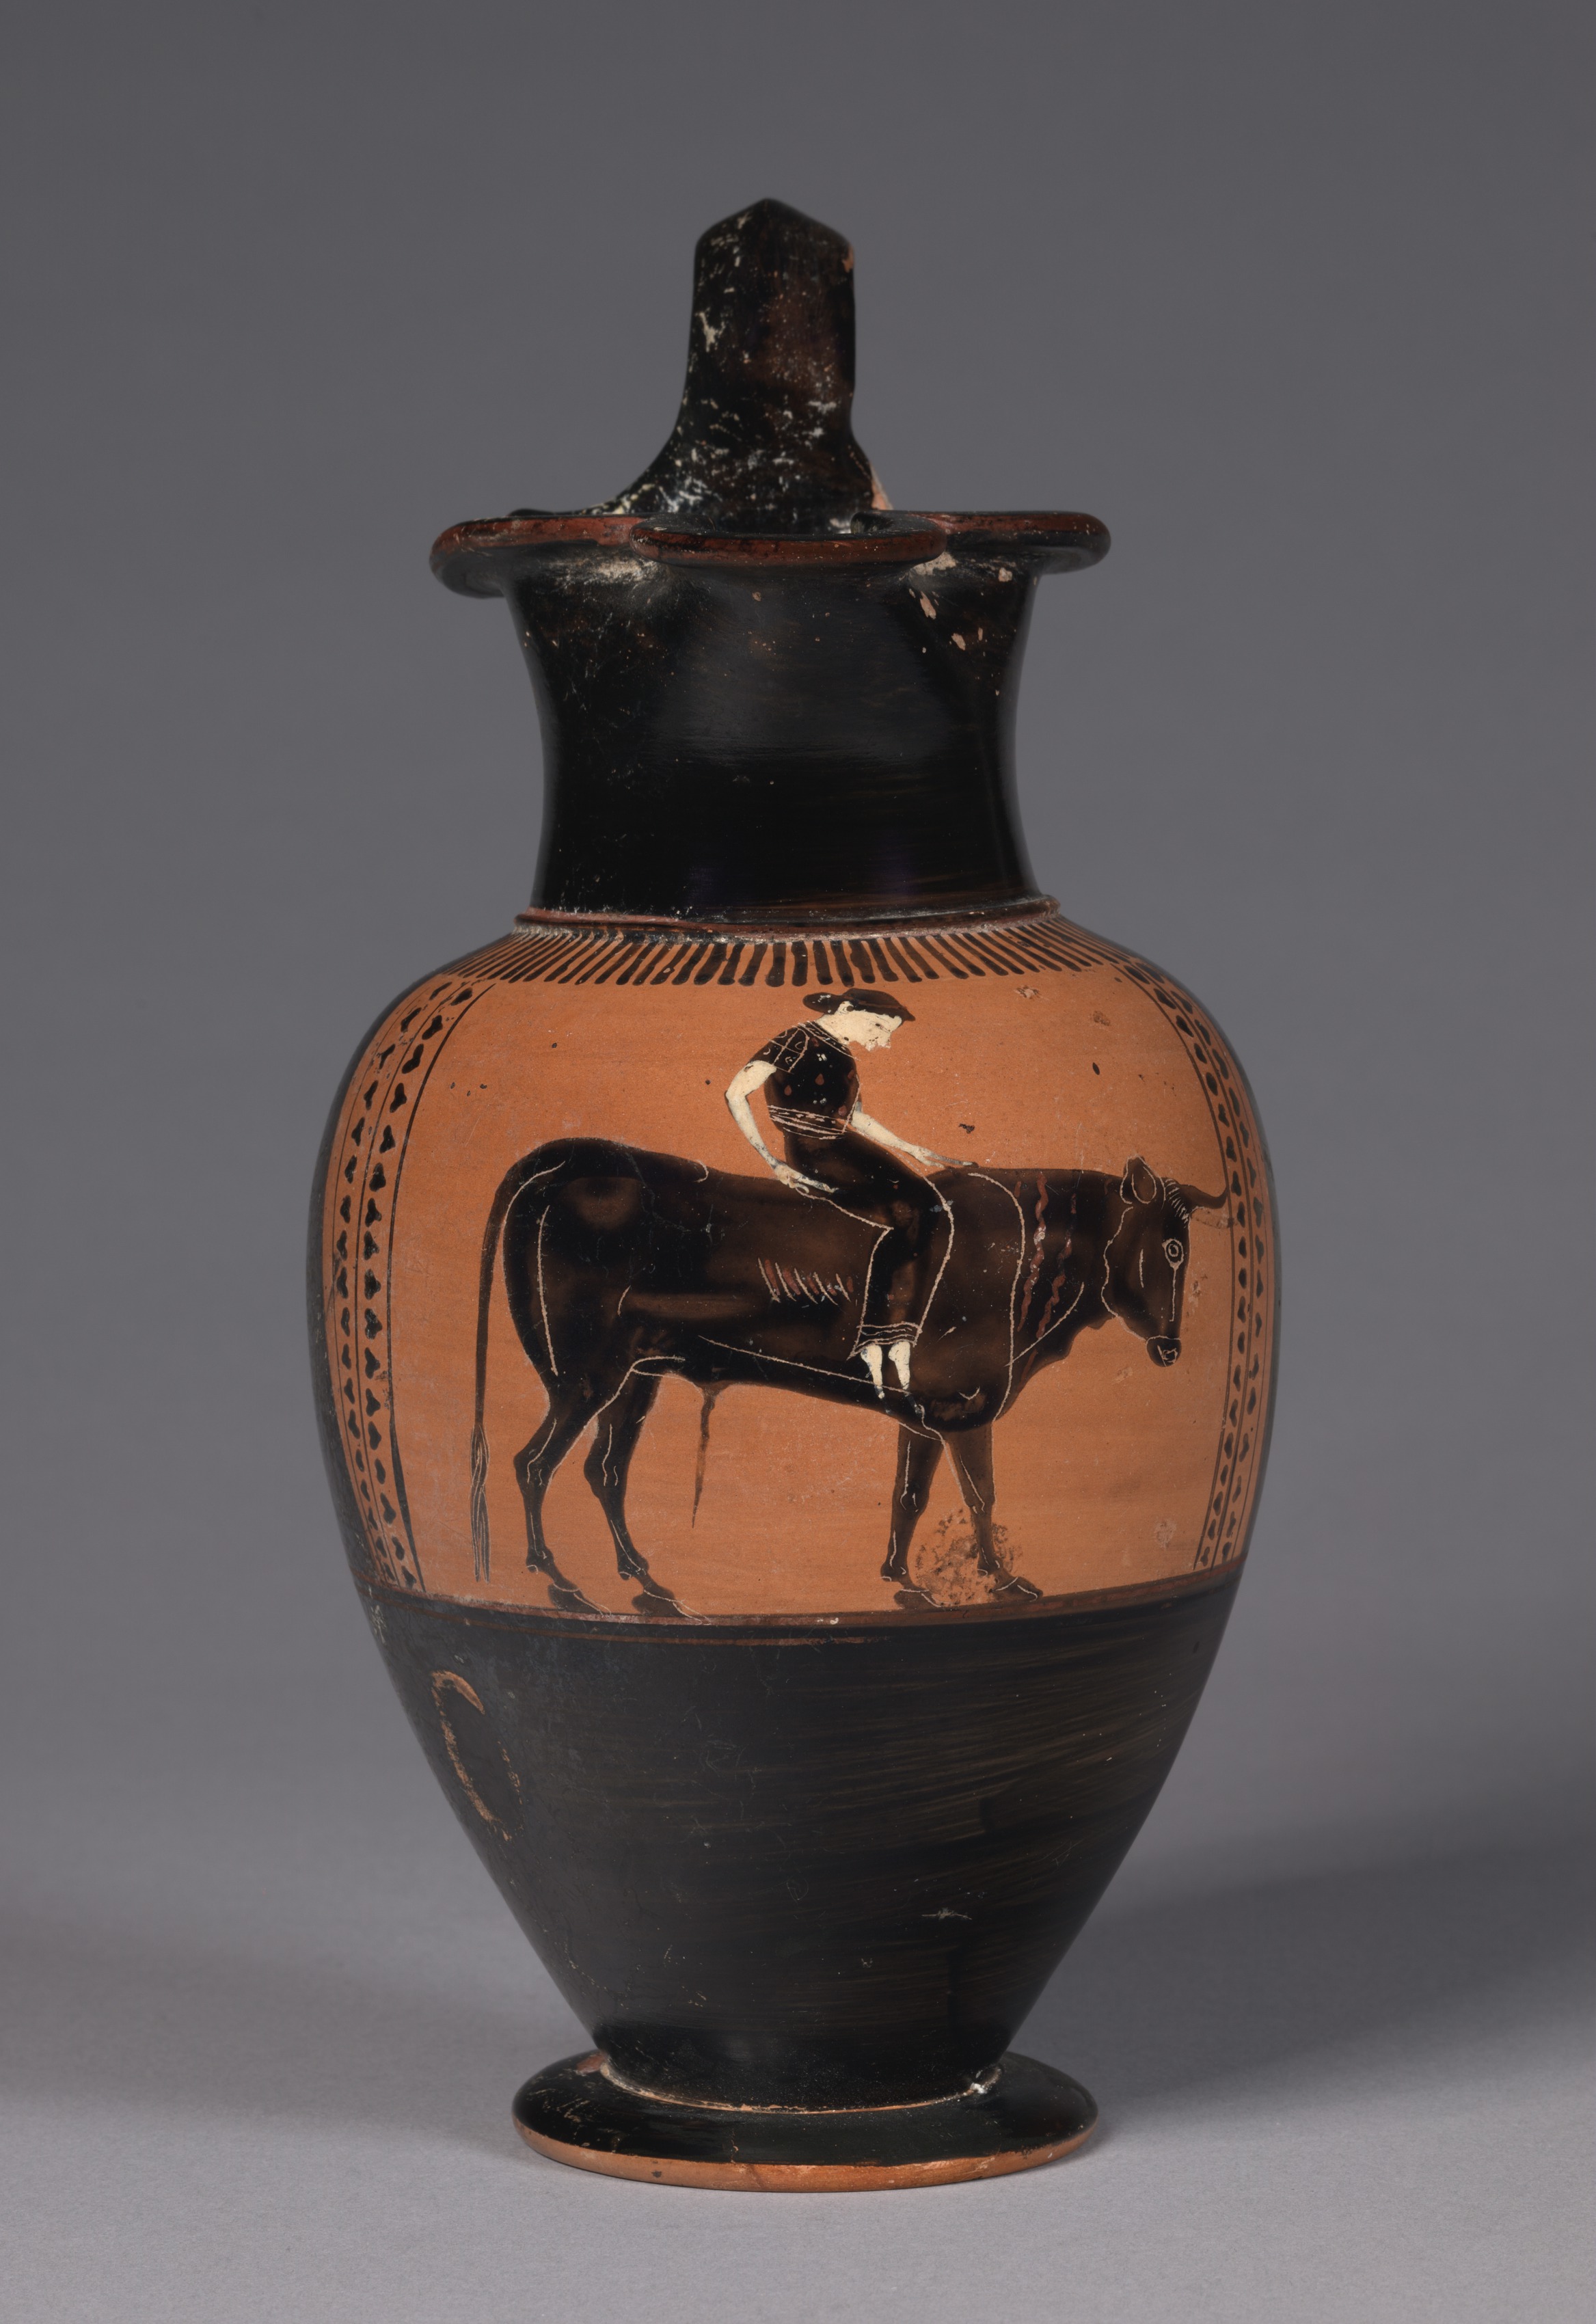 Black-Figure Trefoil Oinochoe (Wine Jug): Europa on Bull